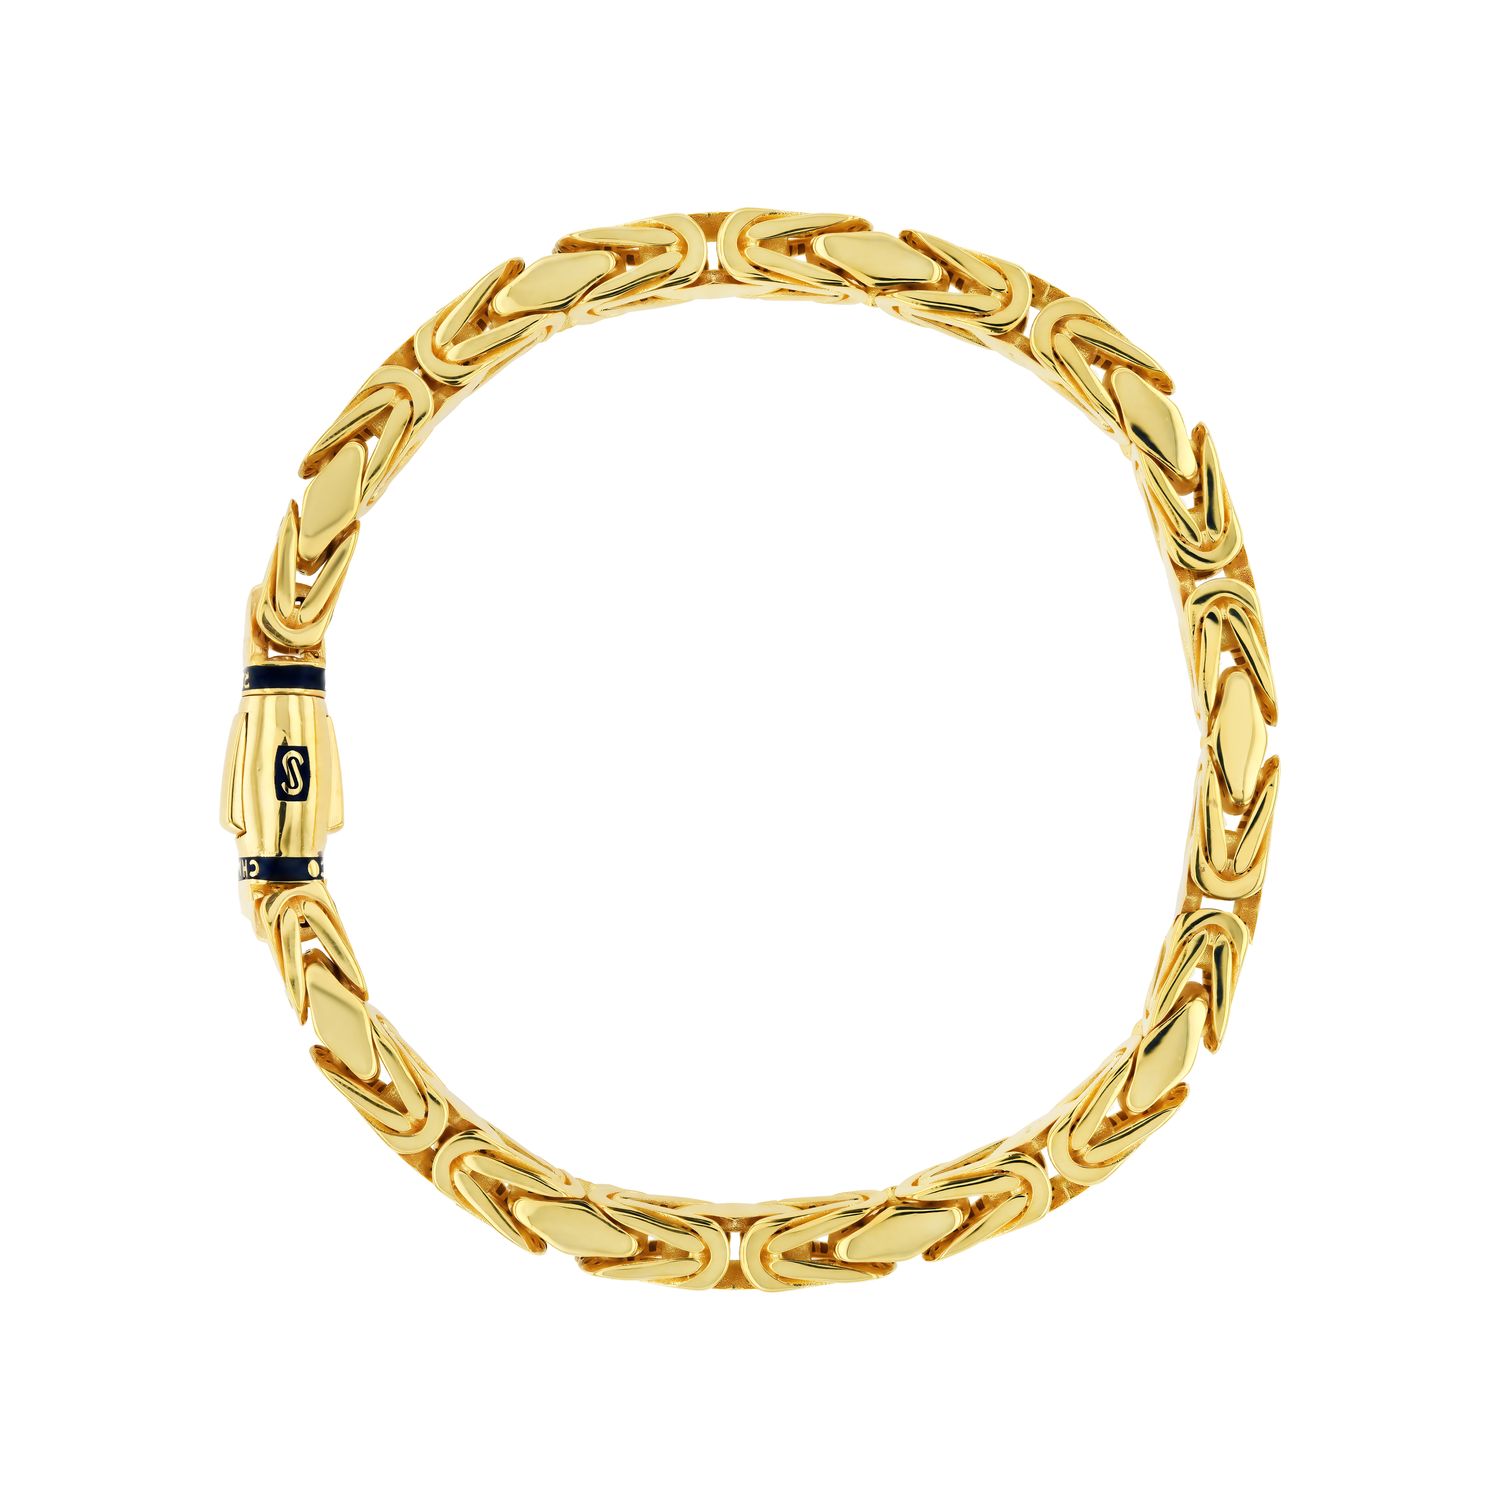 10K Yellow Gold Monaco Miami Cuban Pave Diamond Cut Chain Bracelet, 7.5mm-  17mm | eBay